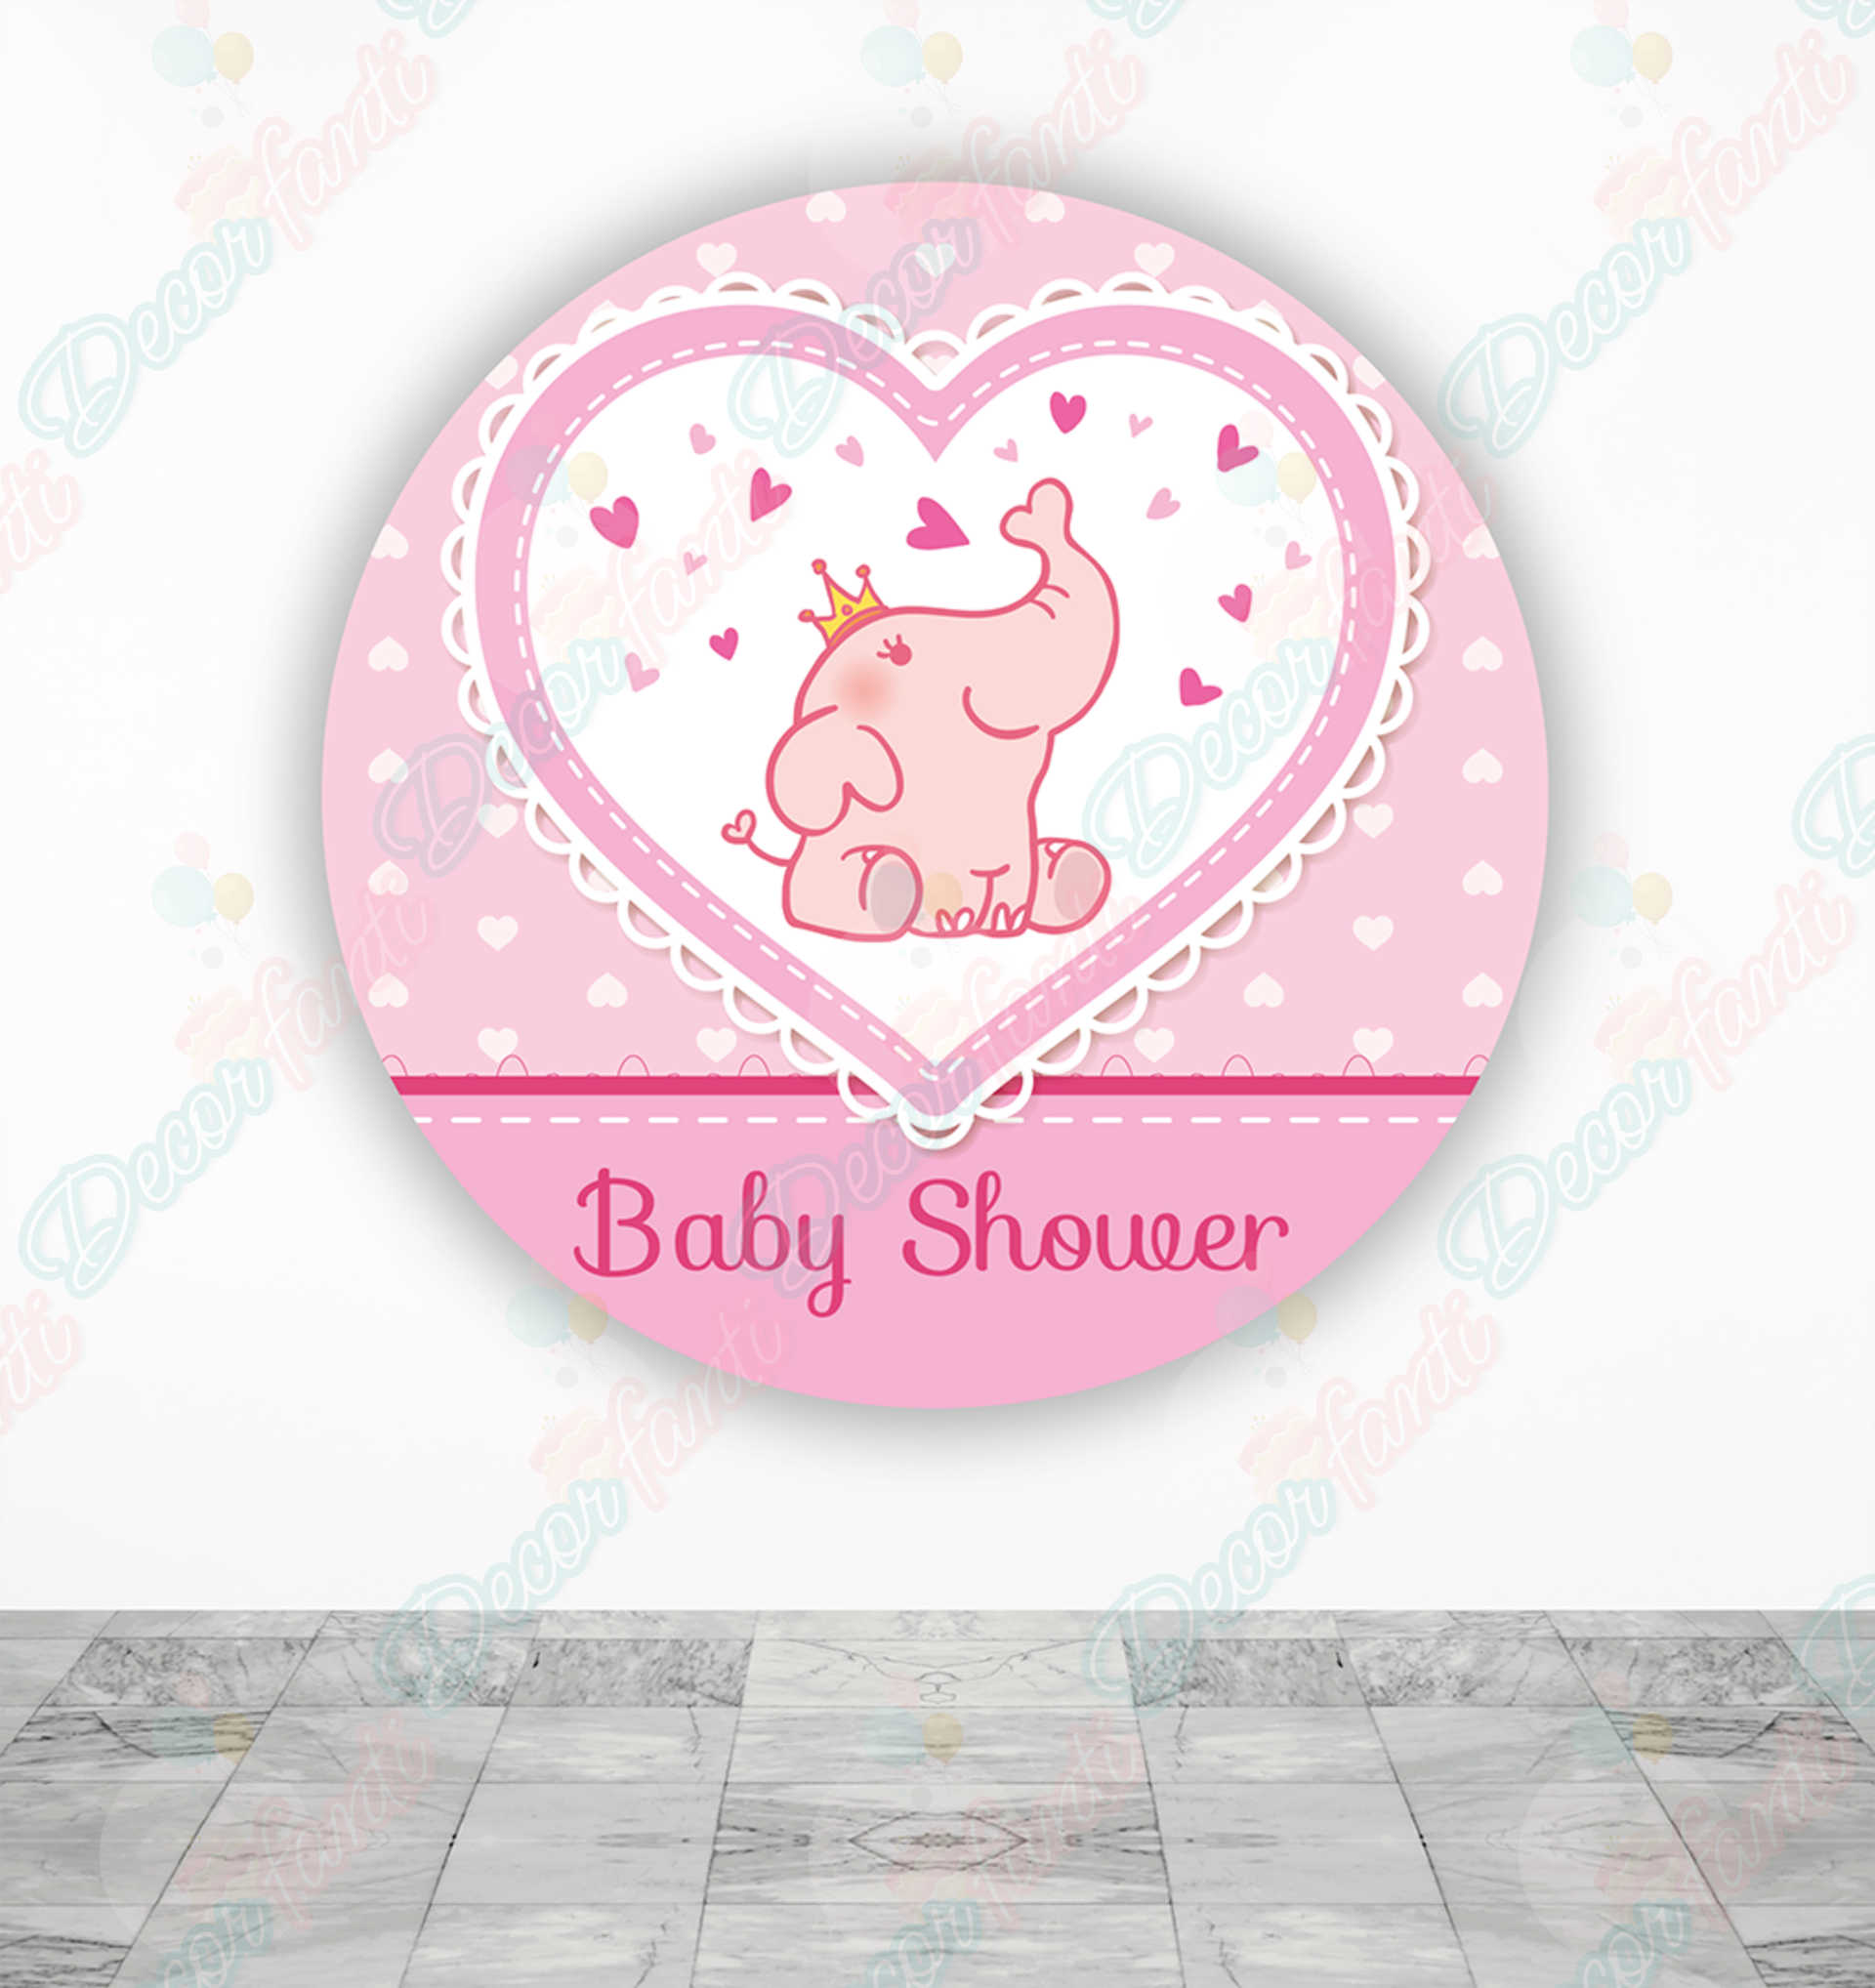 Baby Shower niña Fundas tela sublimada para cilindros - Decorfanti